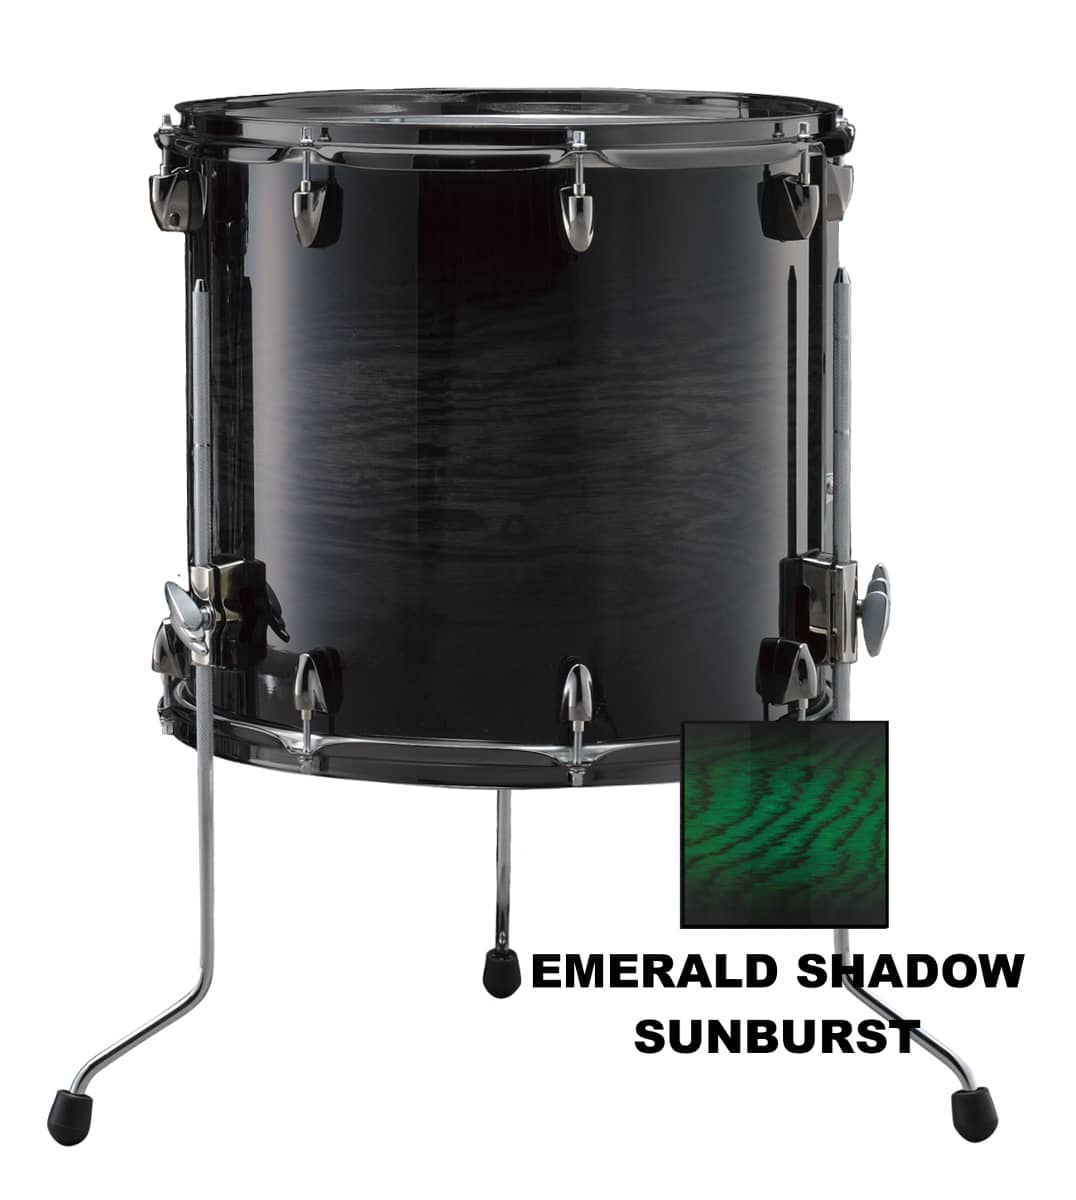 Lnf1413 - 14 X 13 - Emerald Shadow Sunburst pour 409